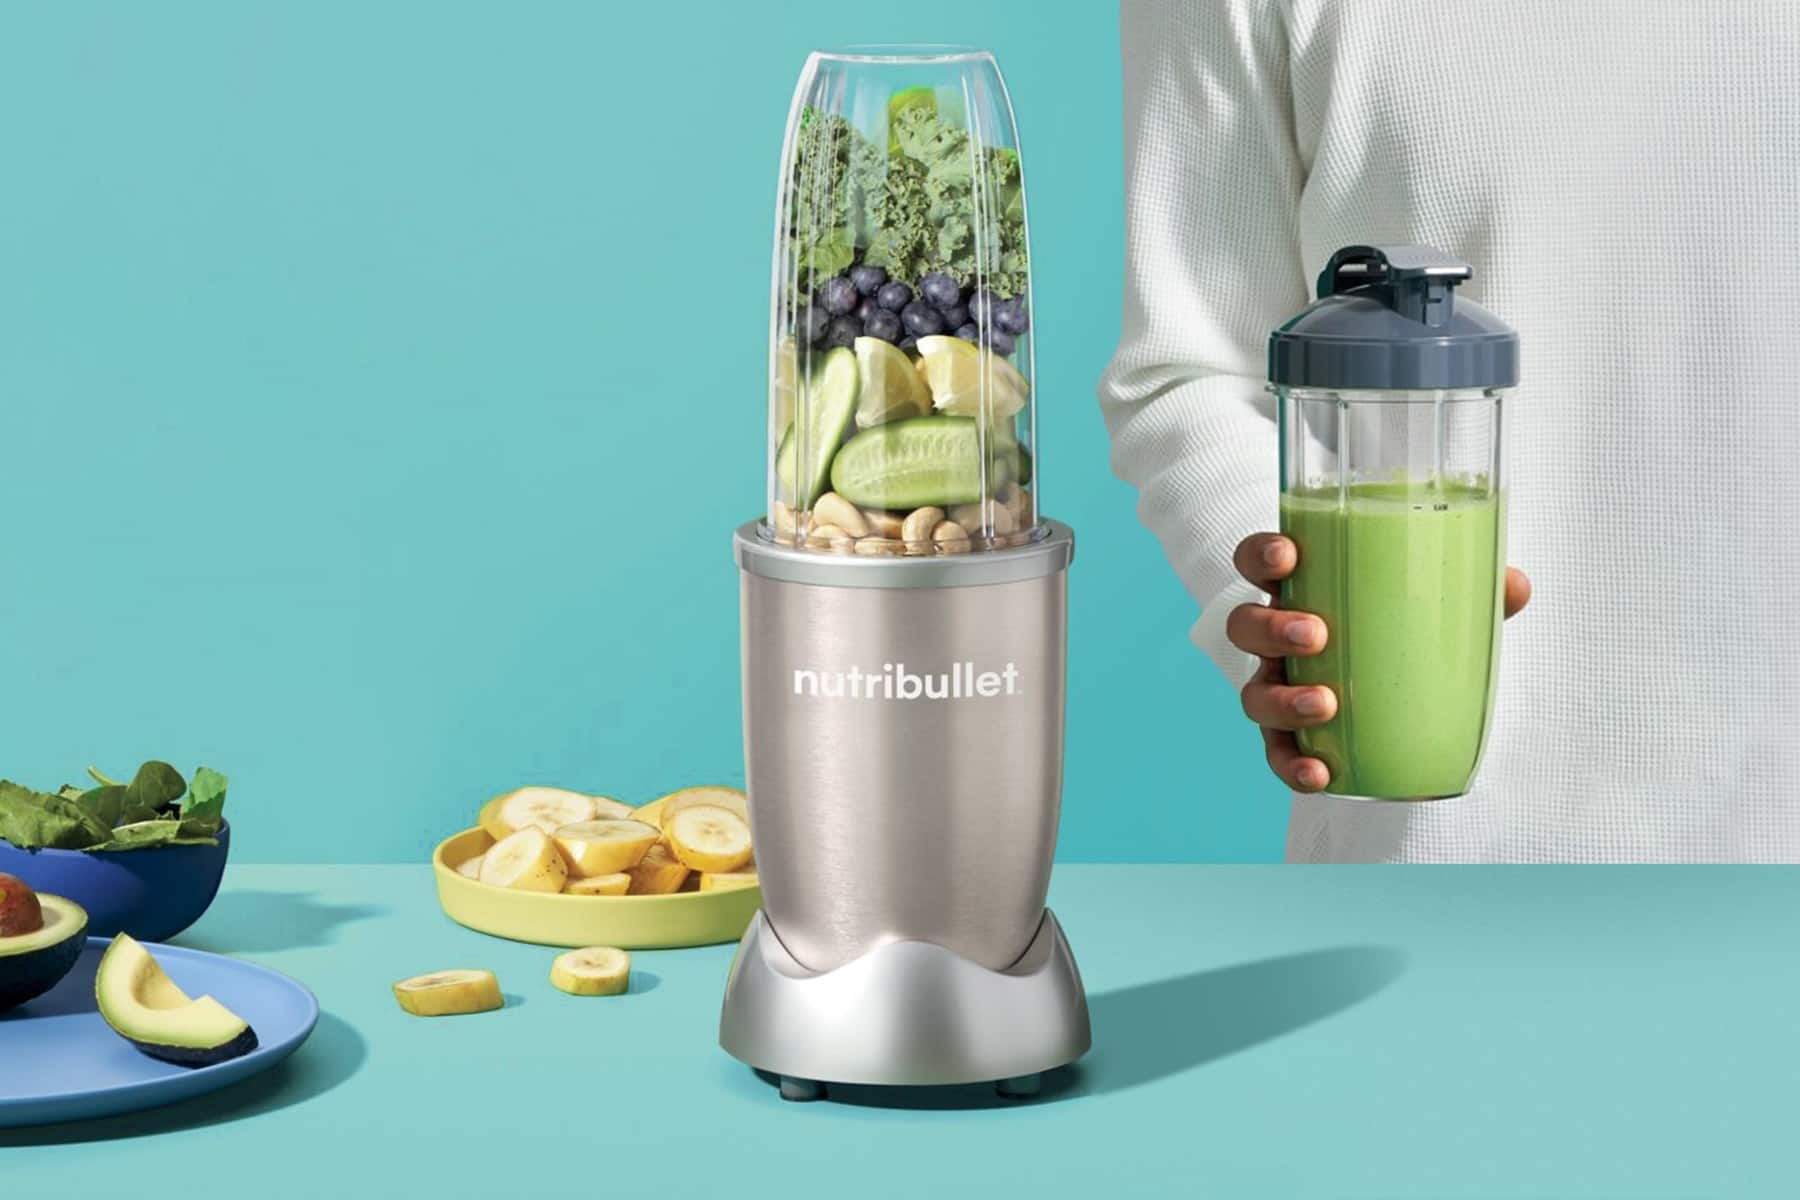 v strede grafiky stojí mixér Nutribuller, po jeho ľavej strane leží ovocie a zelenina, po pravej strane stojí muž držiaci hotové smoothie. Pozadie je modré, chladné